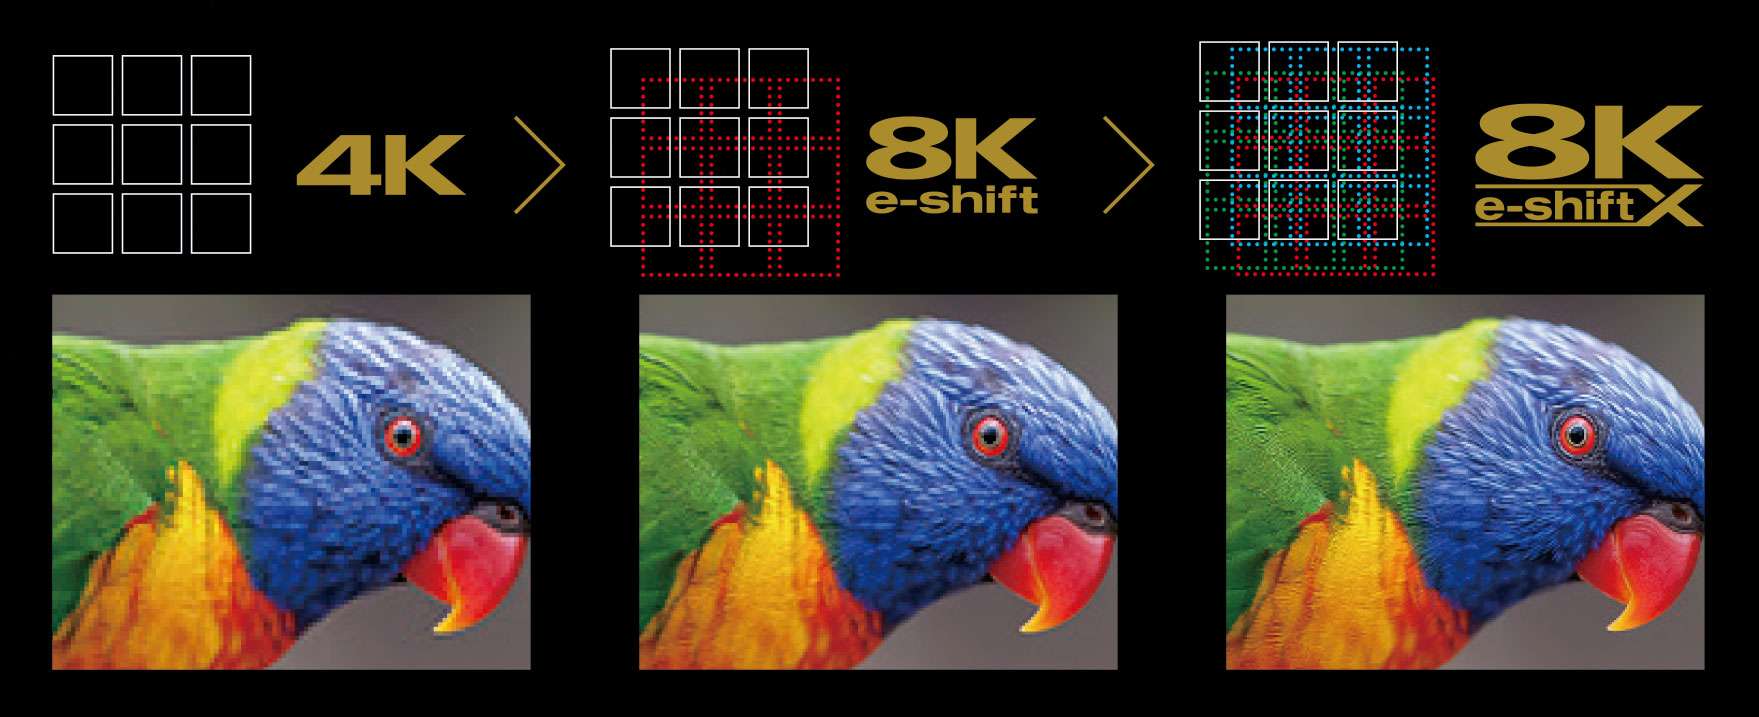 4K resolution vs 8K resolution vs 8K eshift JVC resolution with a parrot